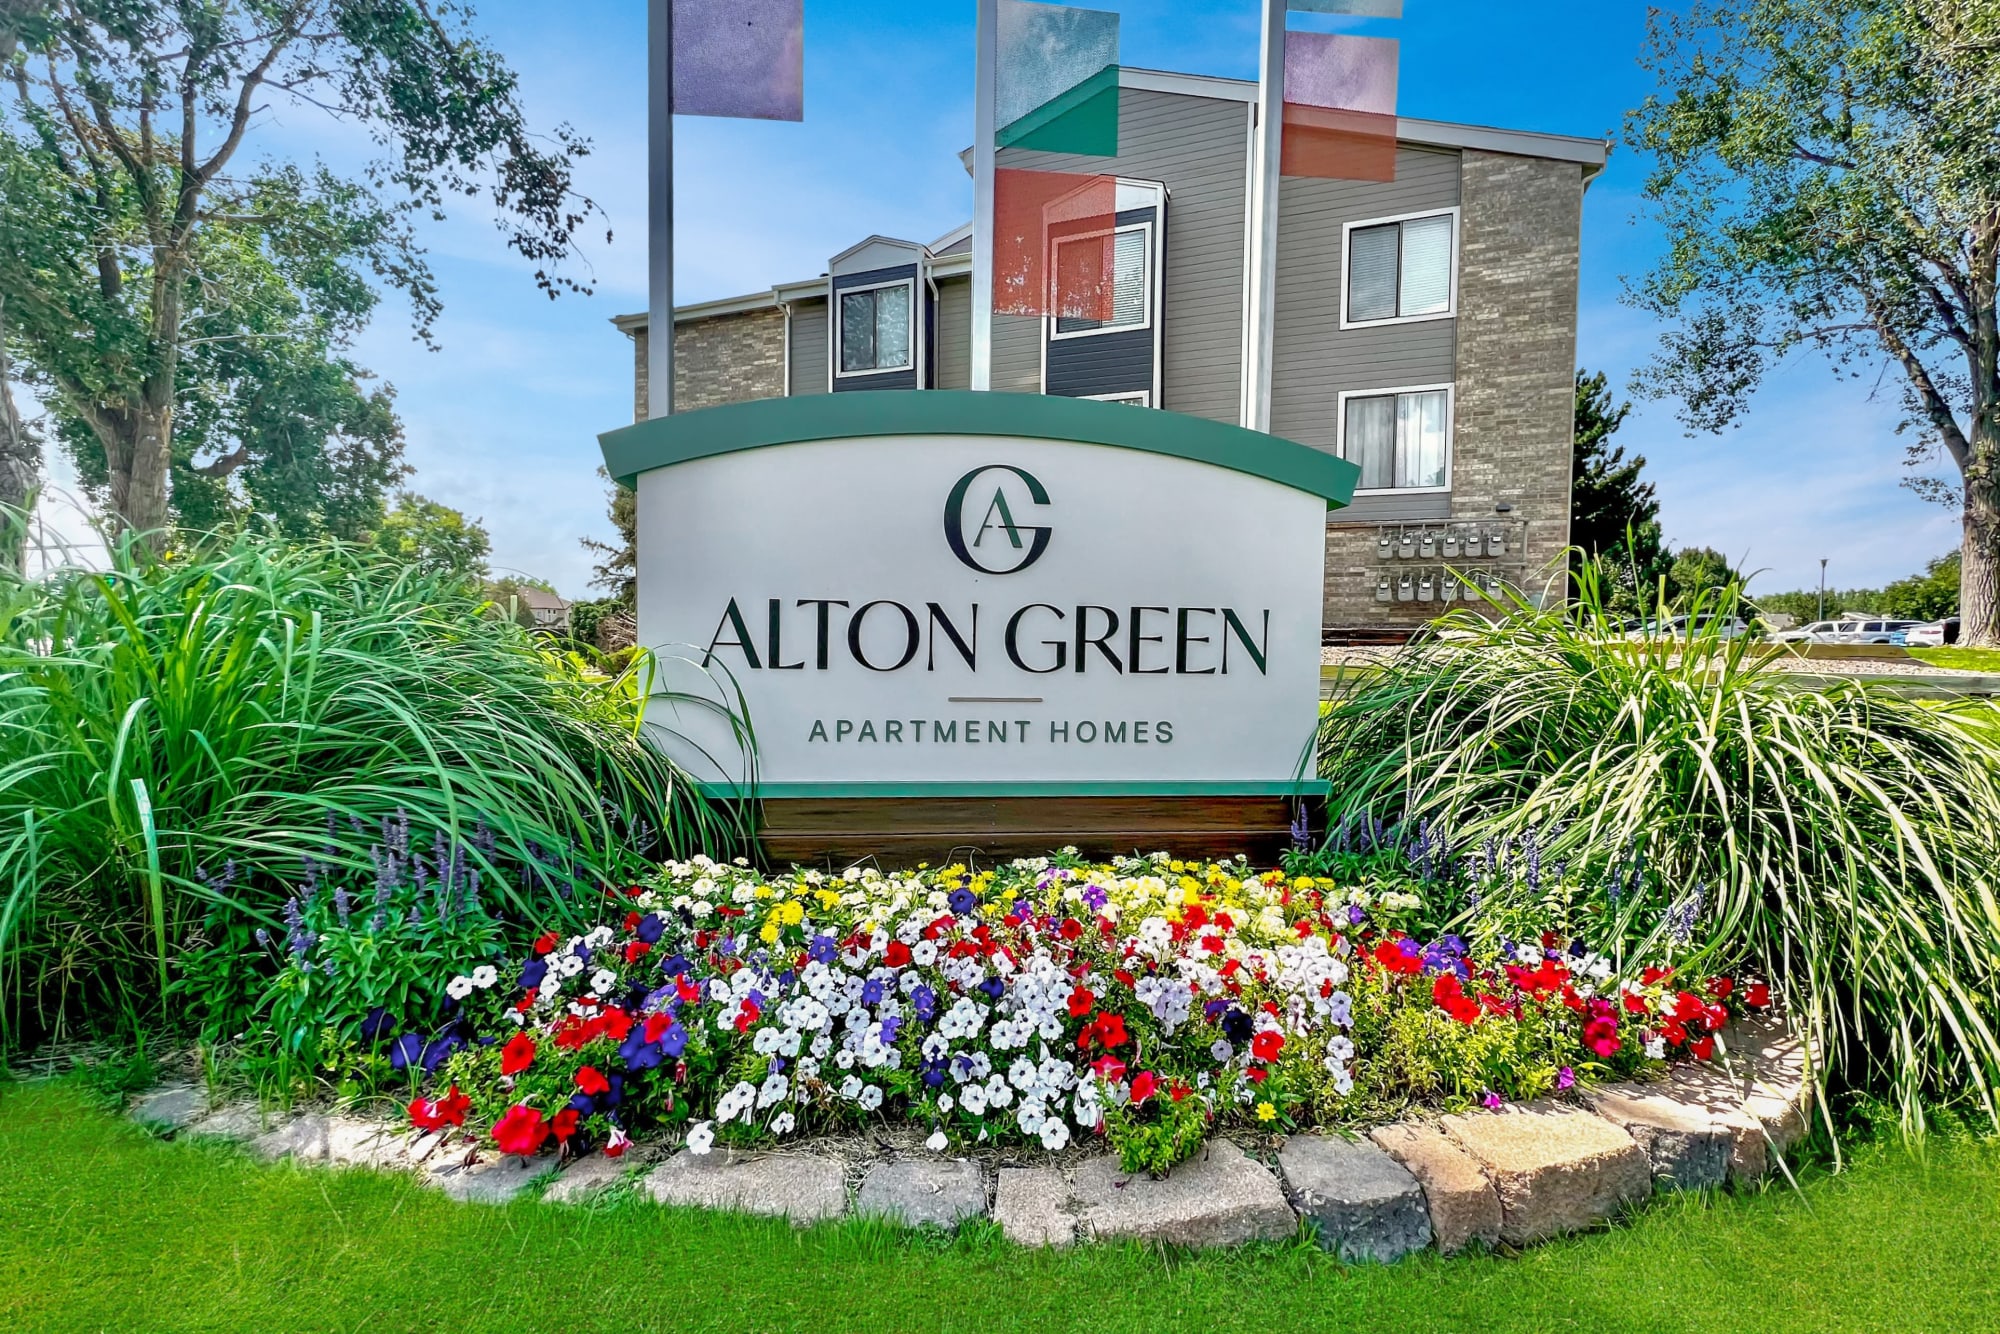 Alton Green at Alton Green Apartments in Denver, Colorado